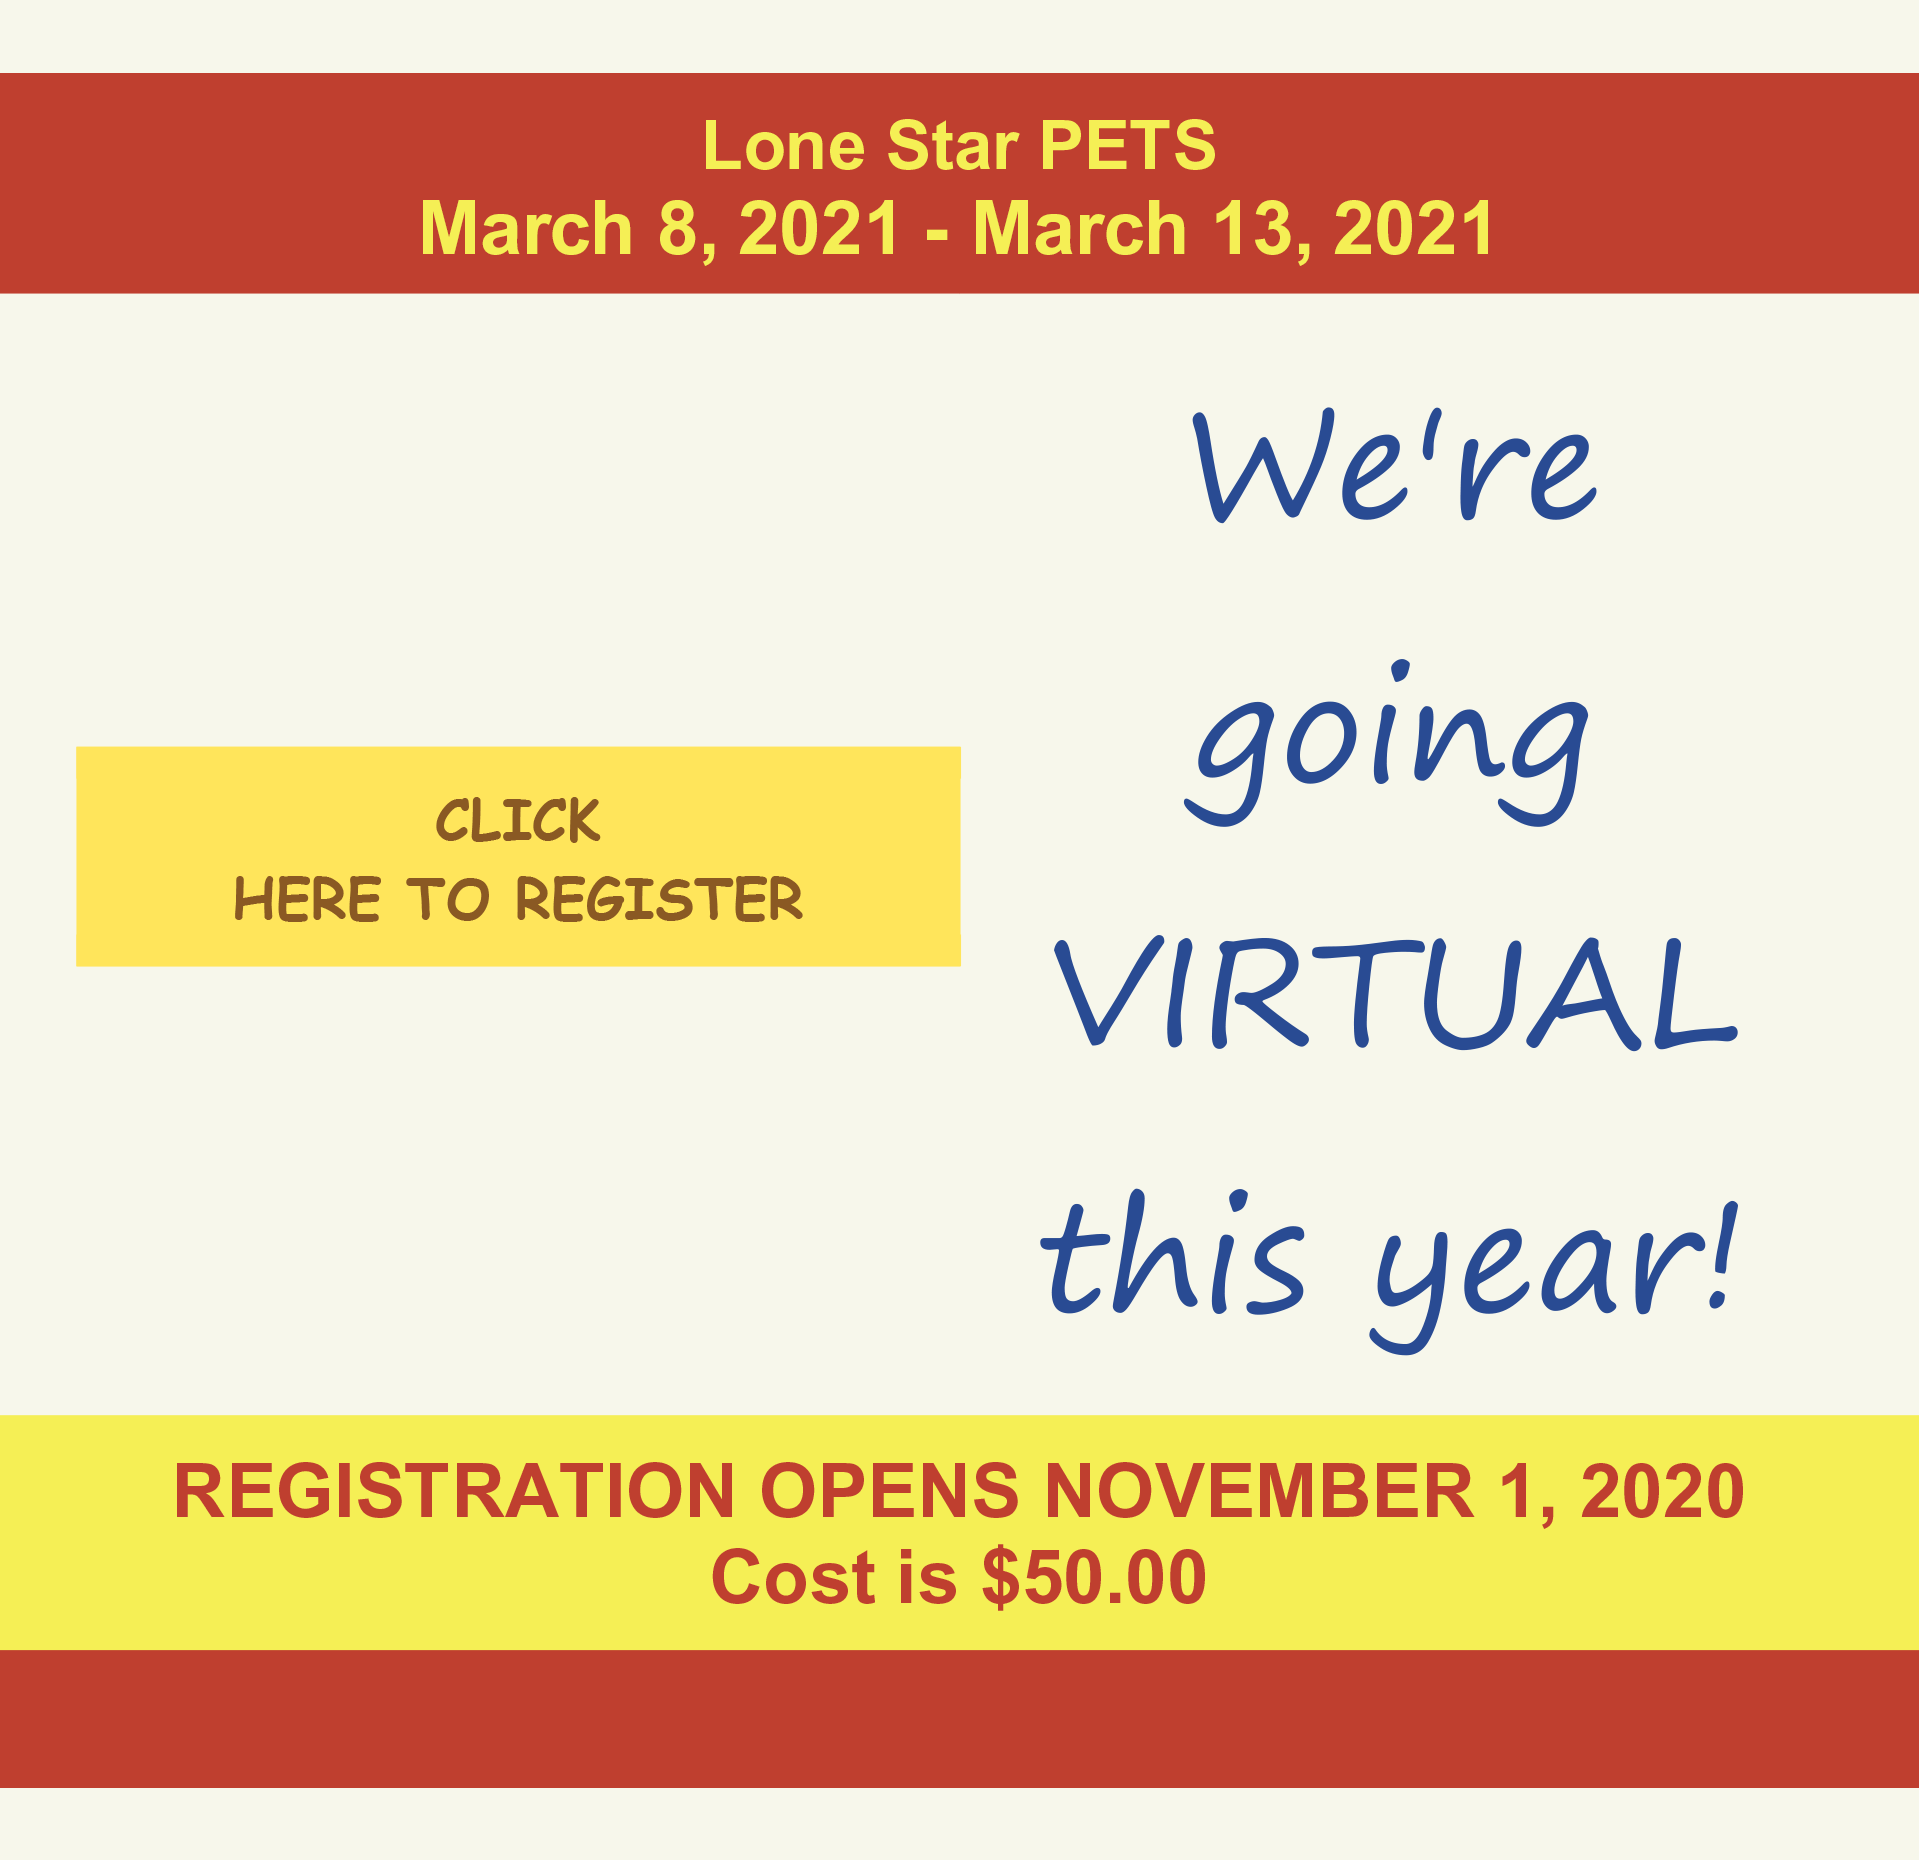 LoneStar PETS Registration Lone Star PETS